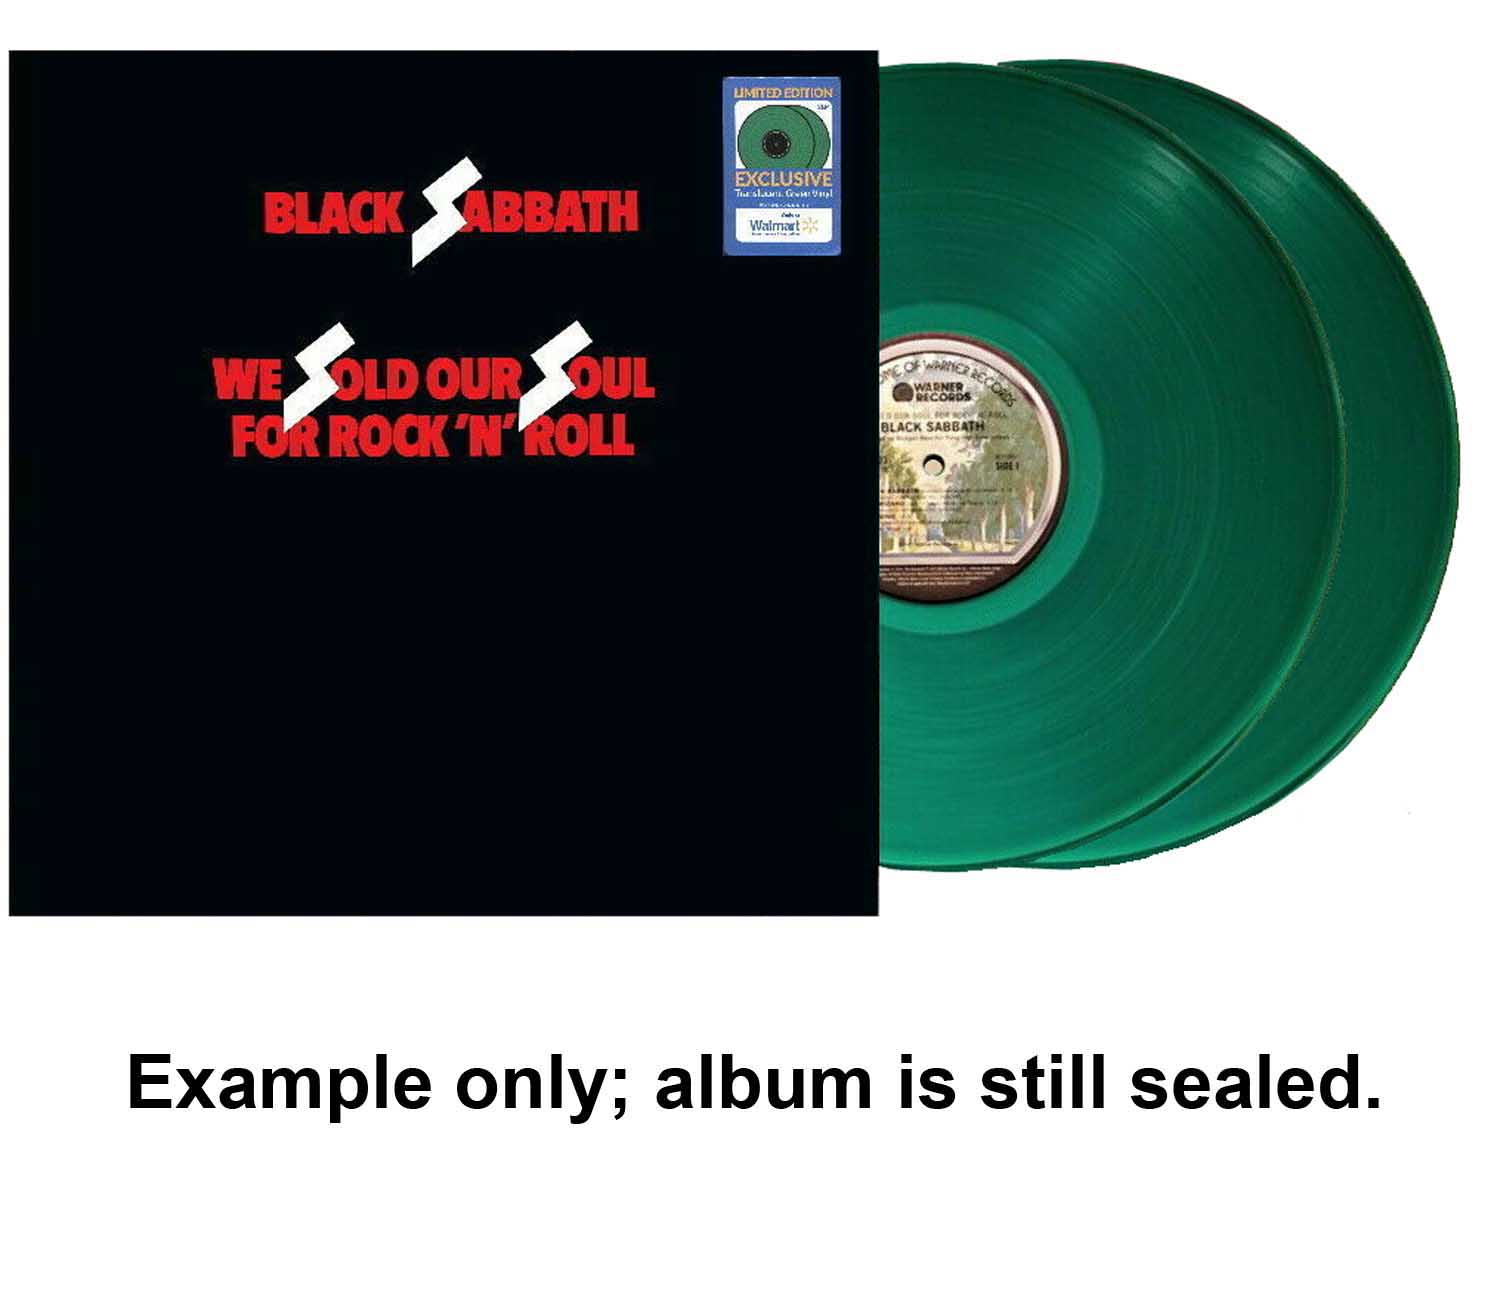 Black Sabbath – We Sold Our Soul for Rock 'n' Roll U.S. green vinyl 2 set